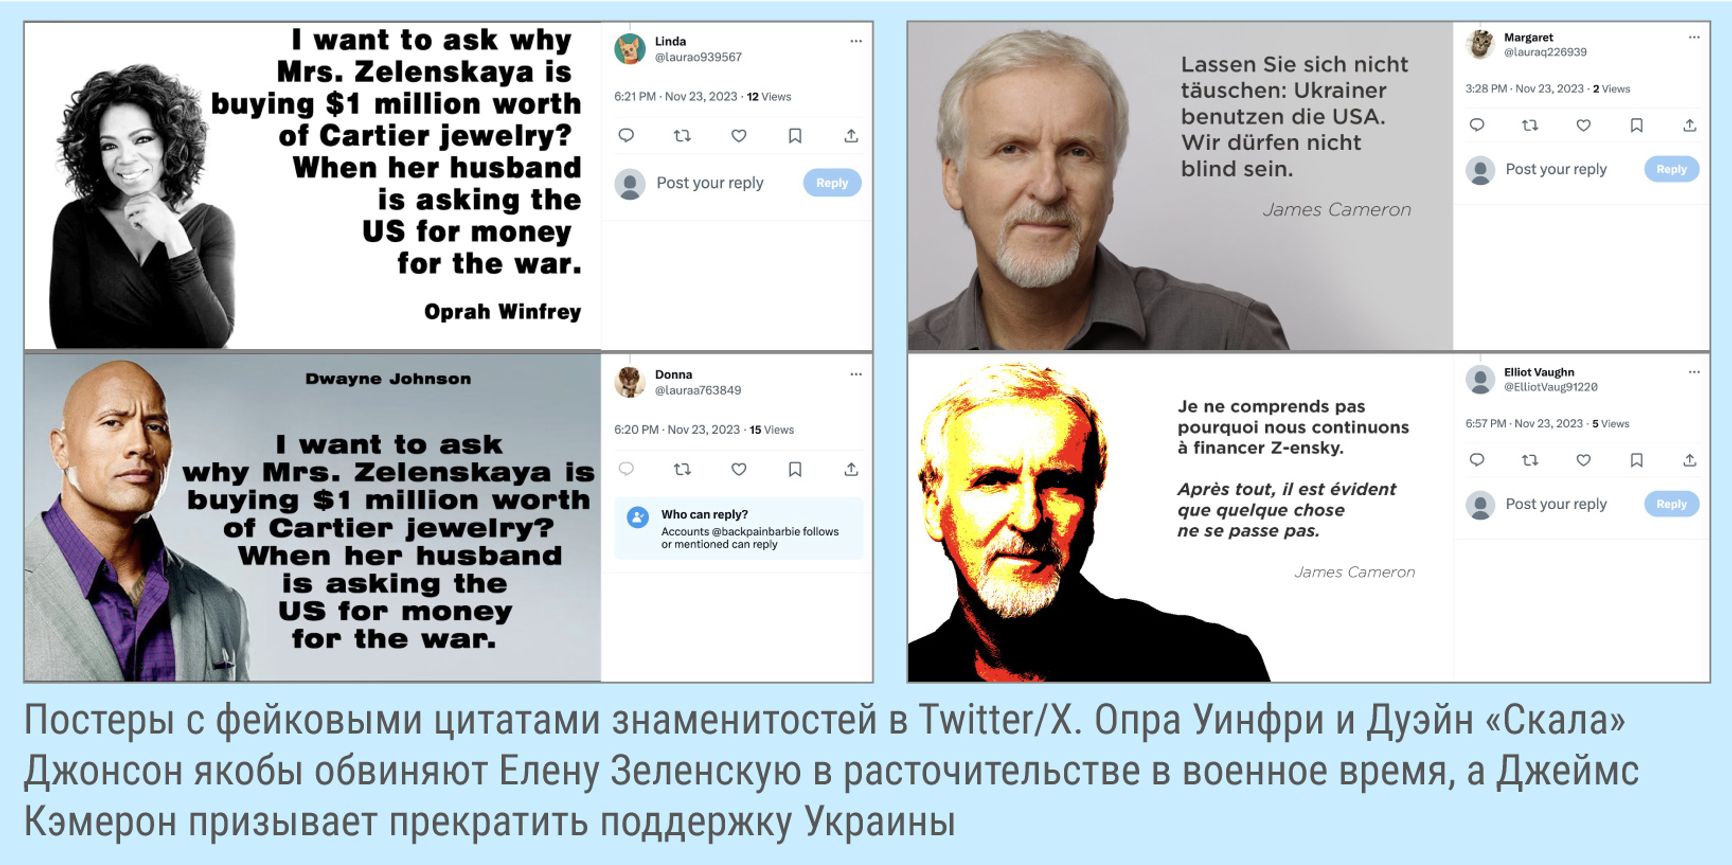 Примеры фейковых цитат знаменитостей, обнаруженных проектом antibot4navalny.